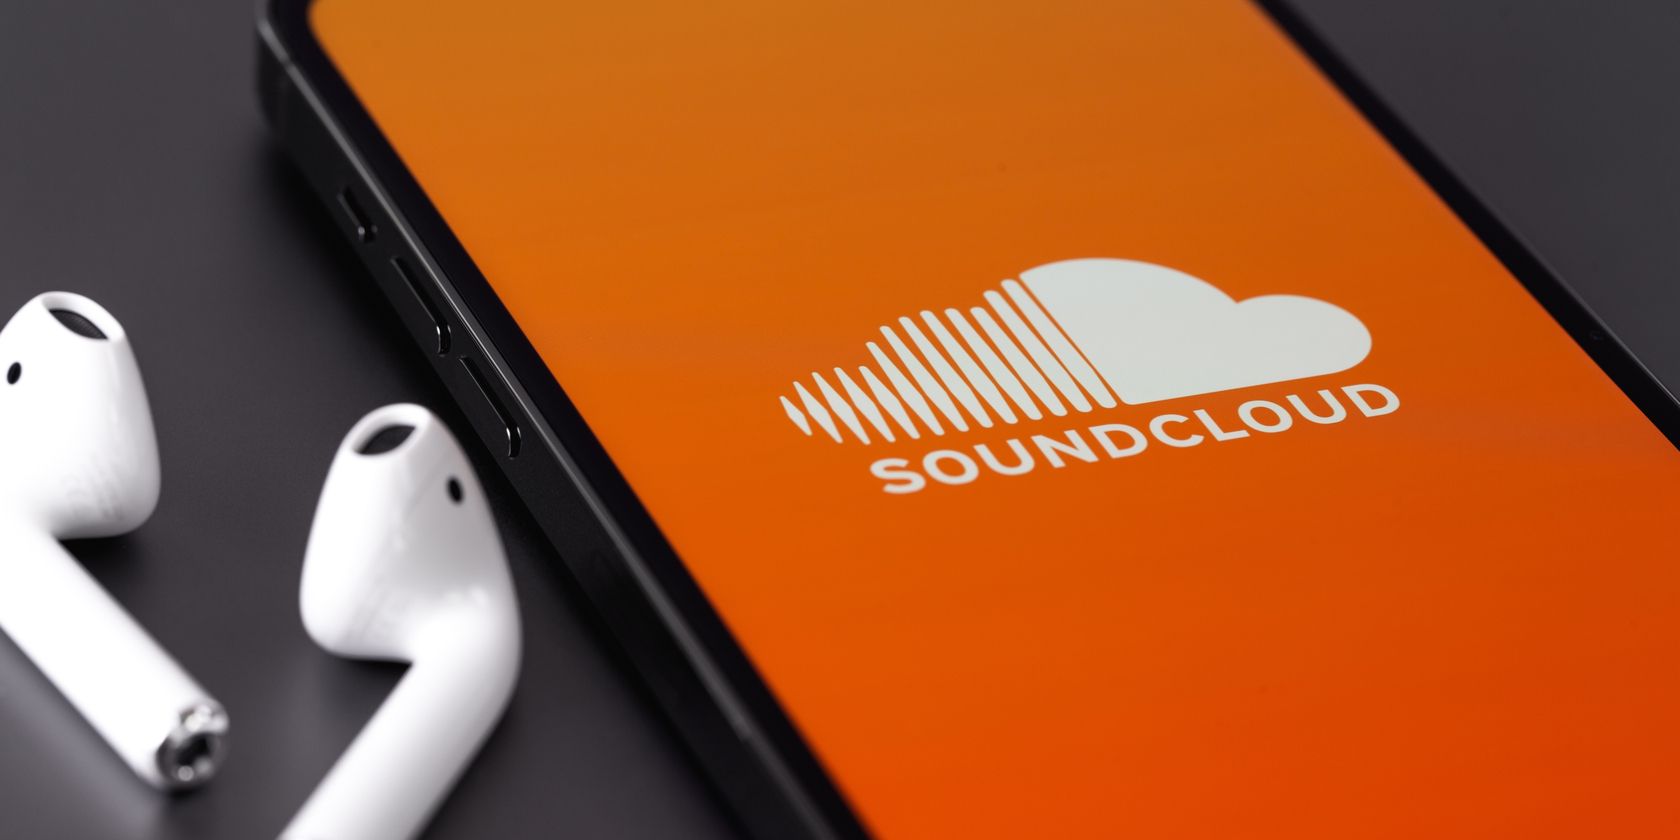 Soundcloud-логотип-на-телефоне-рядом-в-наушниках